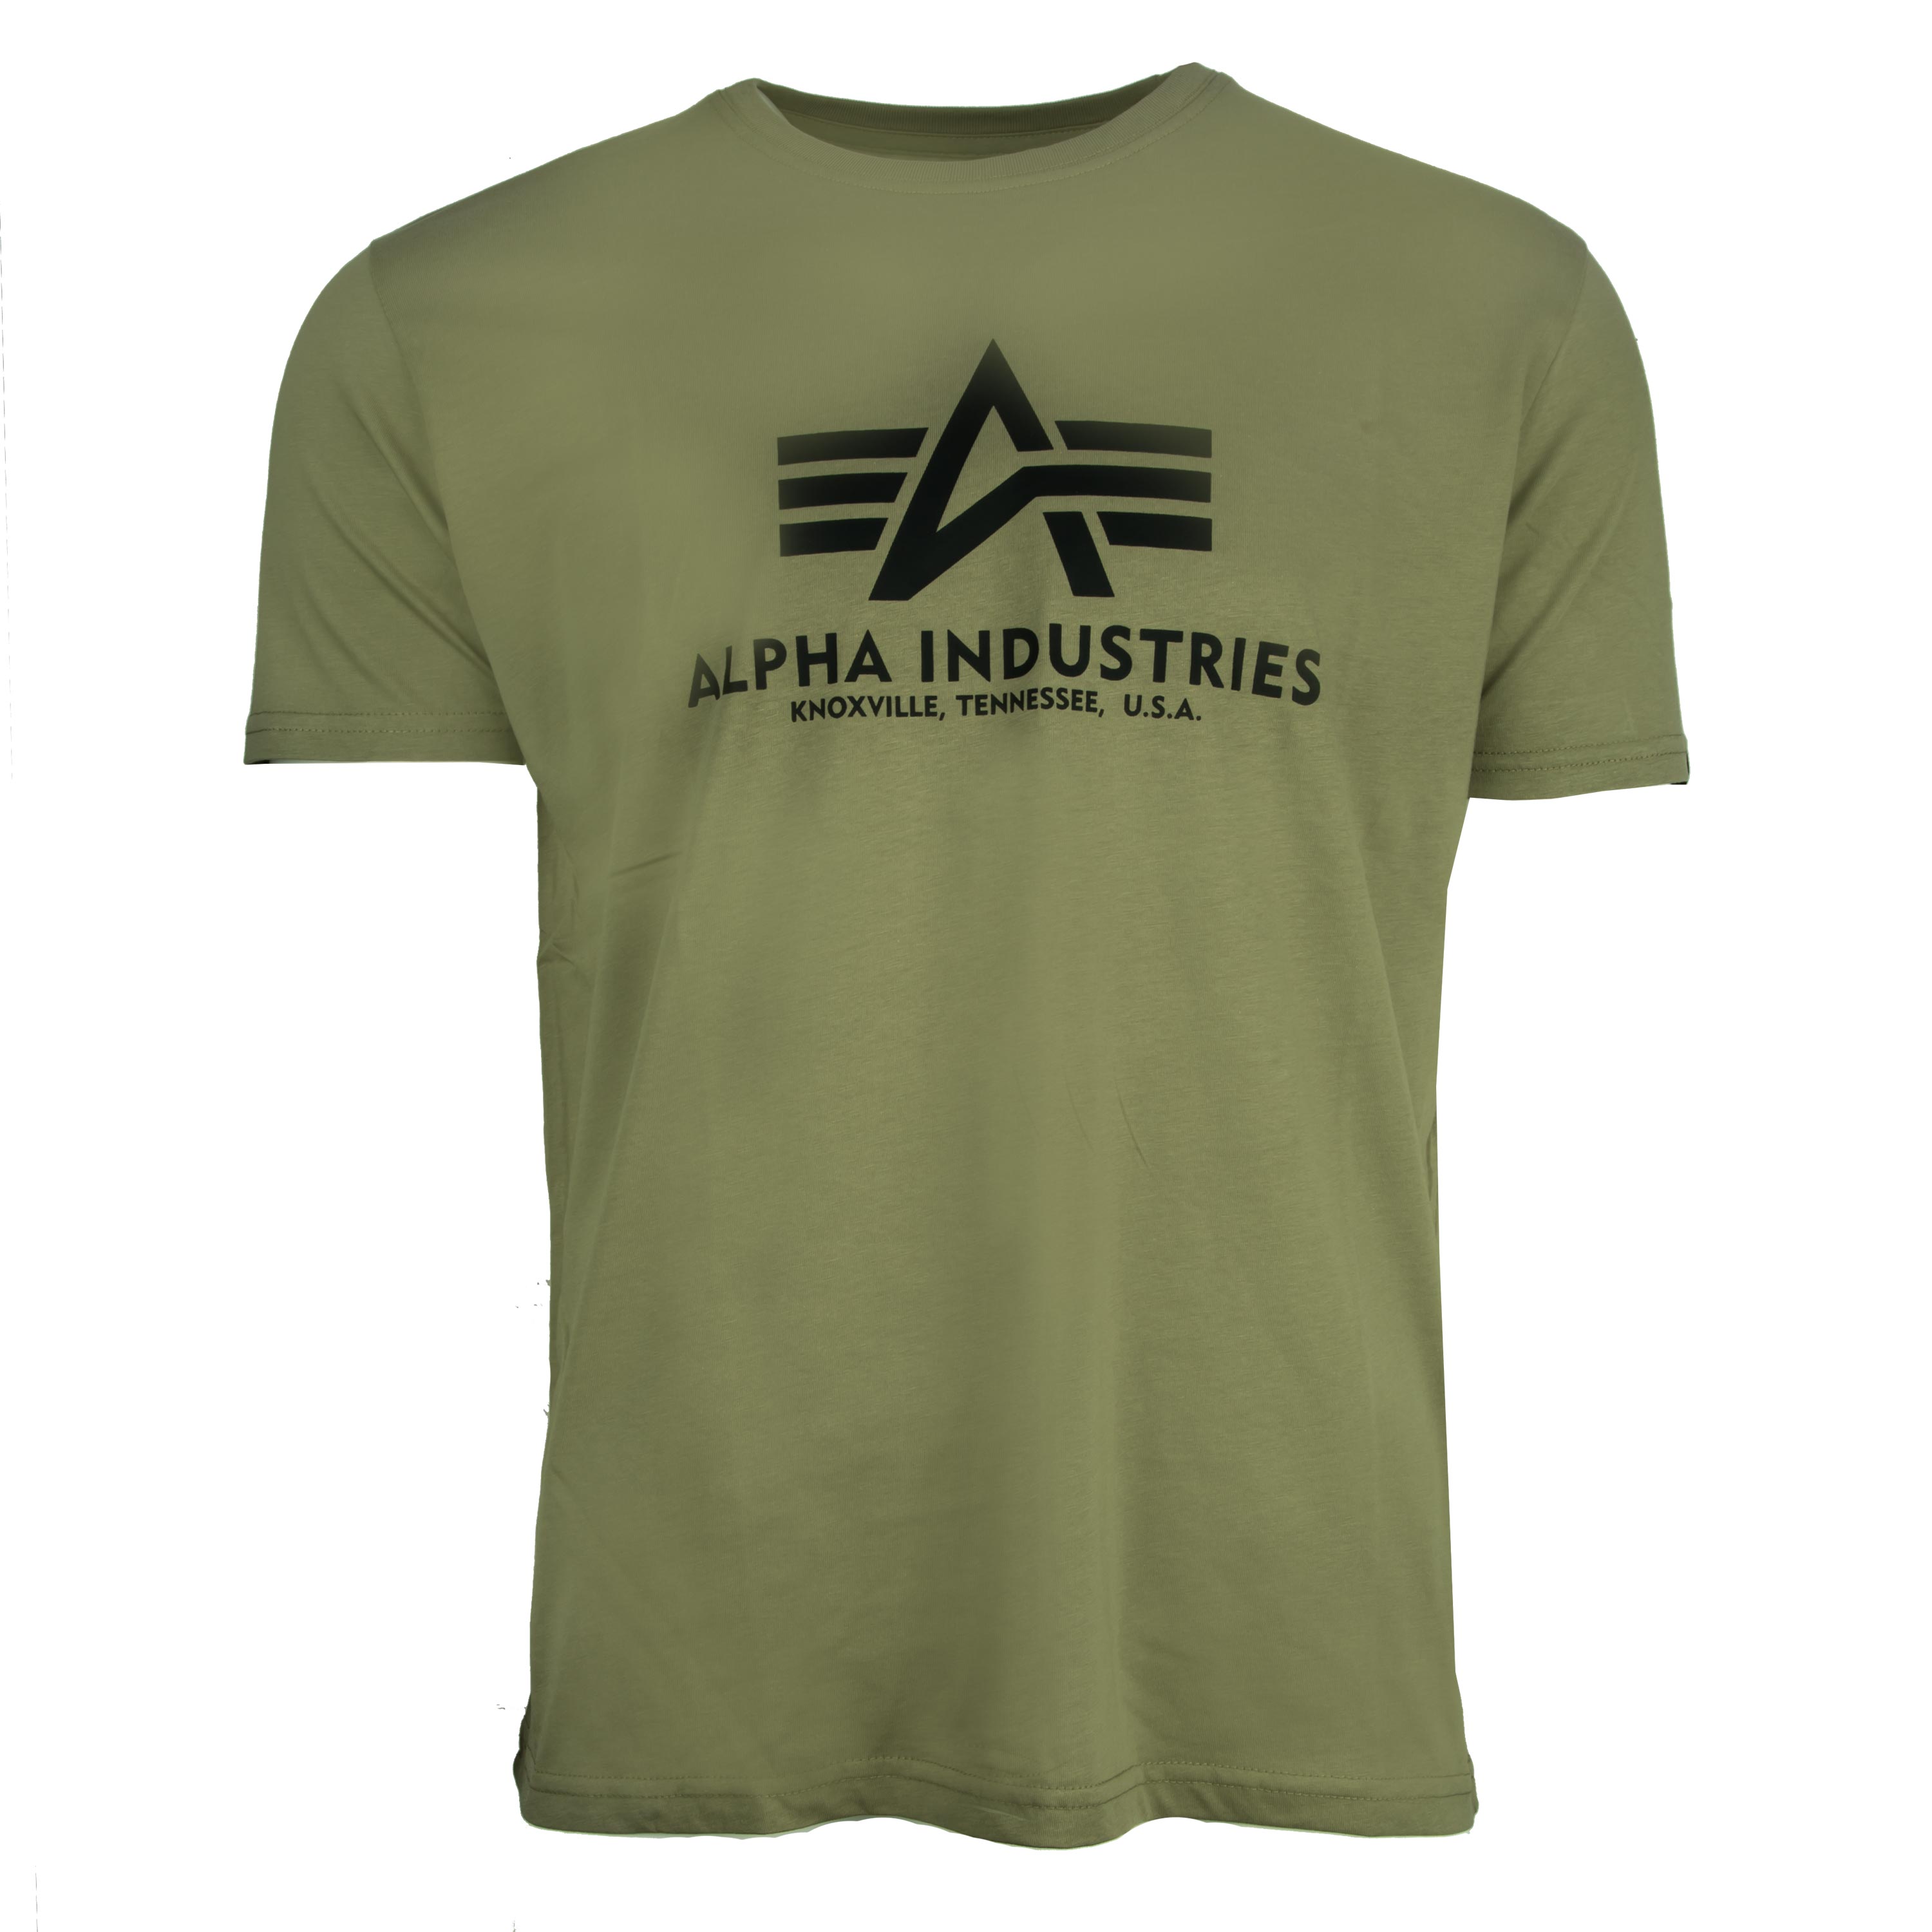 alpha t shirt